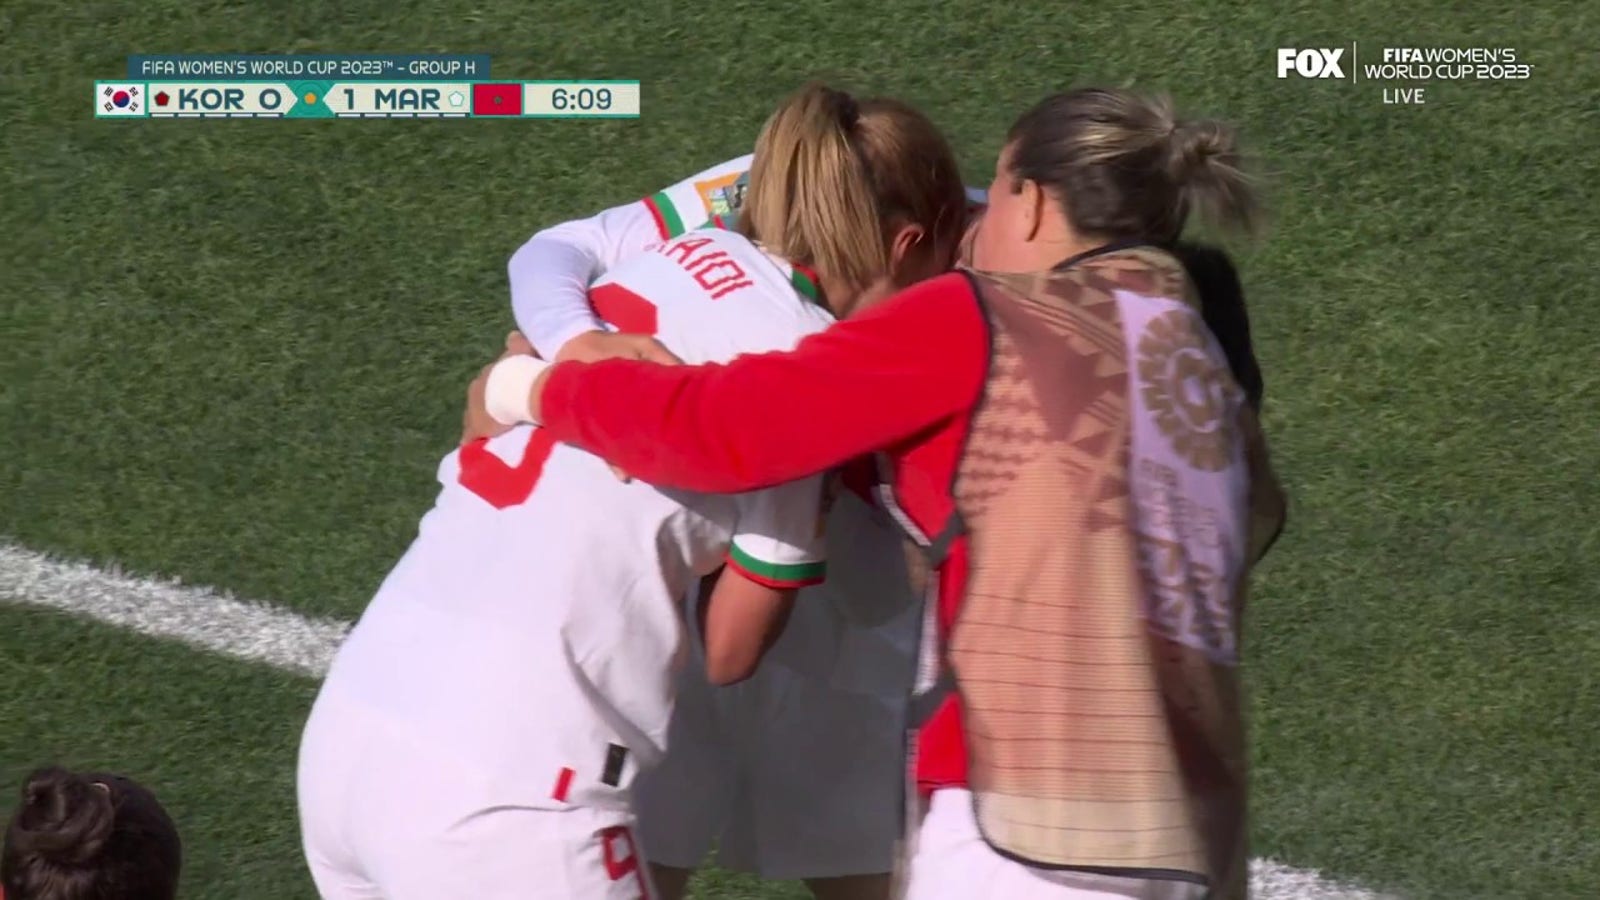 Morocco's Ibtissam Jraidi scores goal vs. Republic of Korea in 6' | 2023 FIFA Women's World Cup